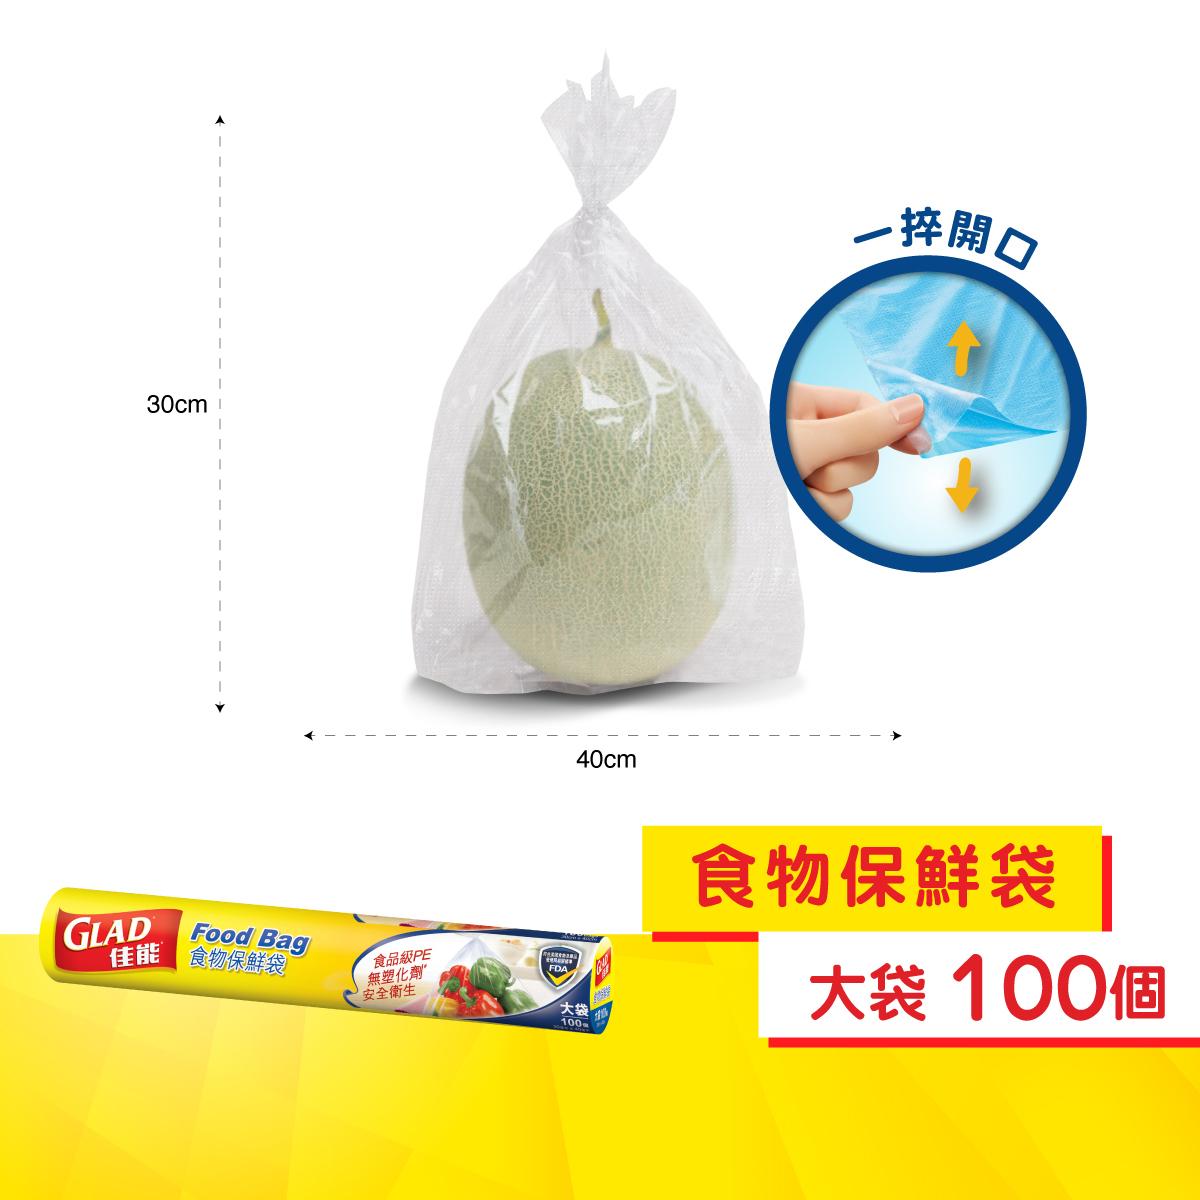 食物保鮮袋 (大號) (新舊包裝隨機發送)